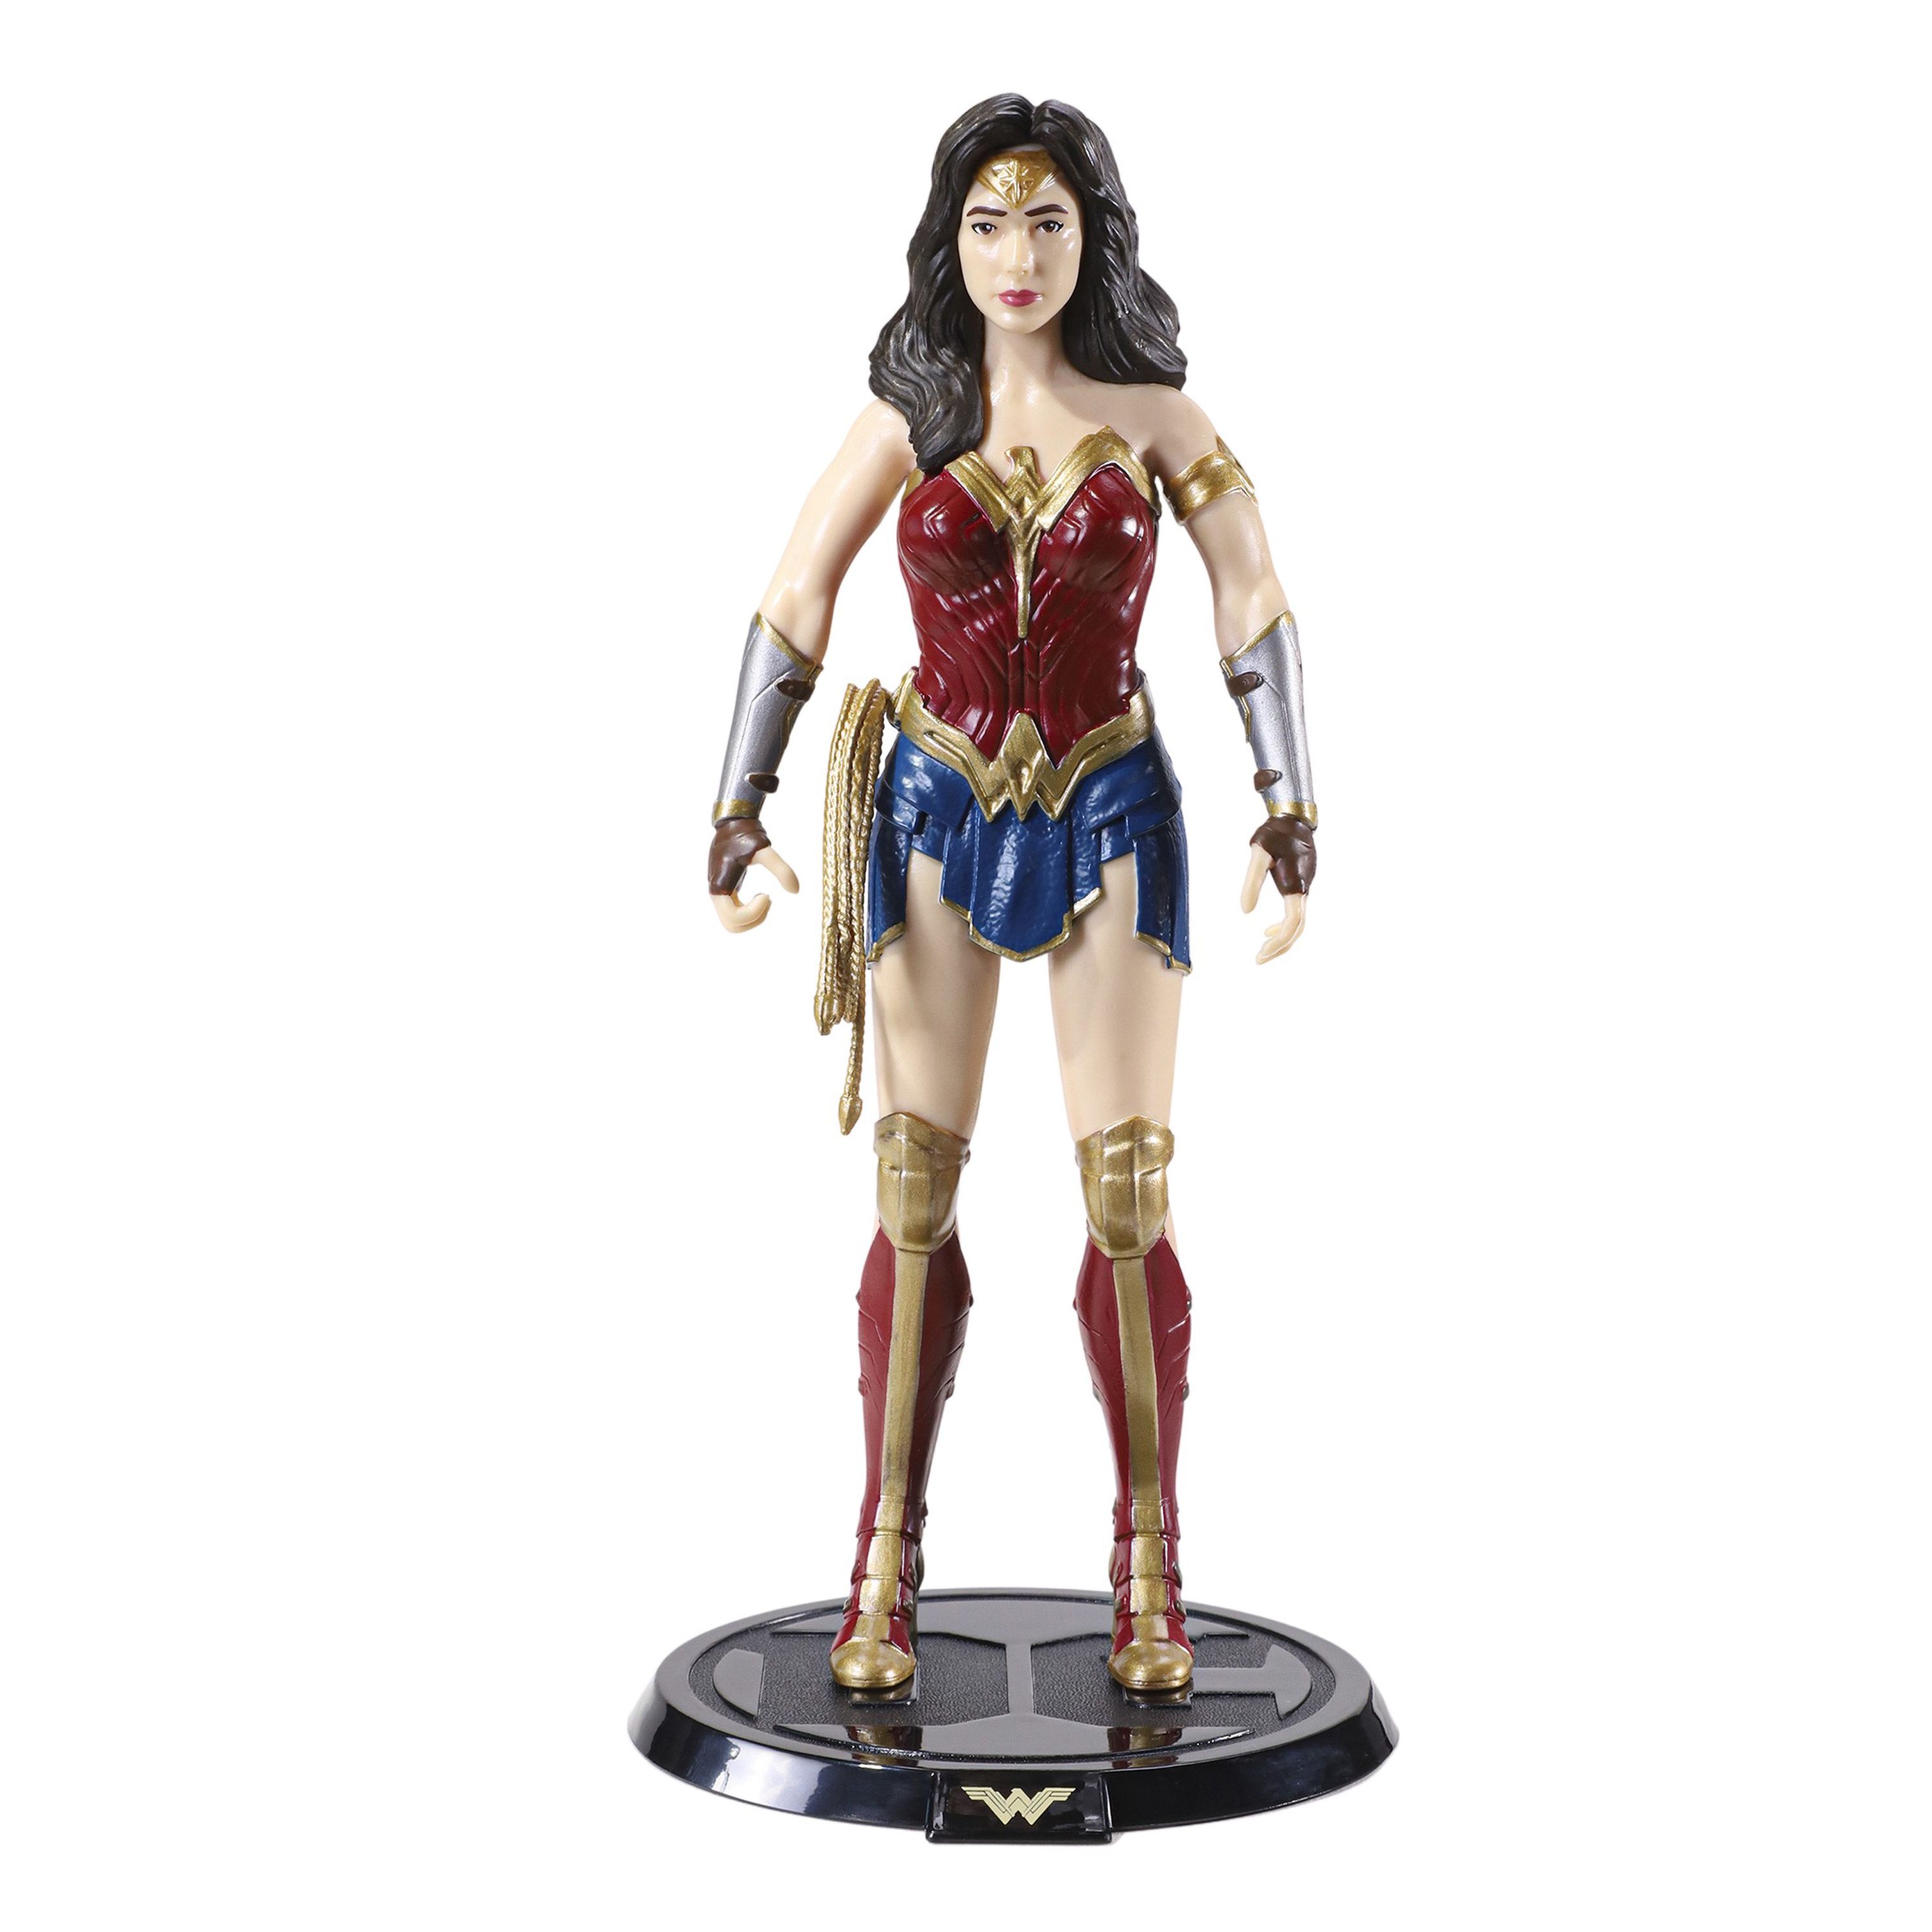 Figurina articulata de colectie Wonder Woman, Amazonian Princess,18 cm